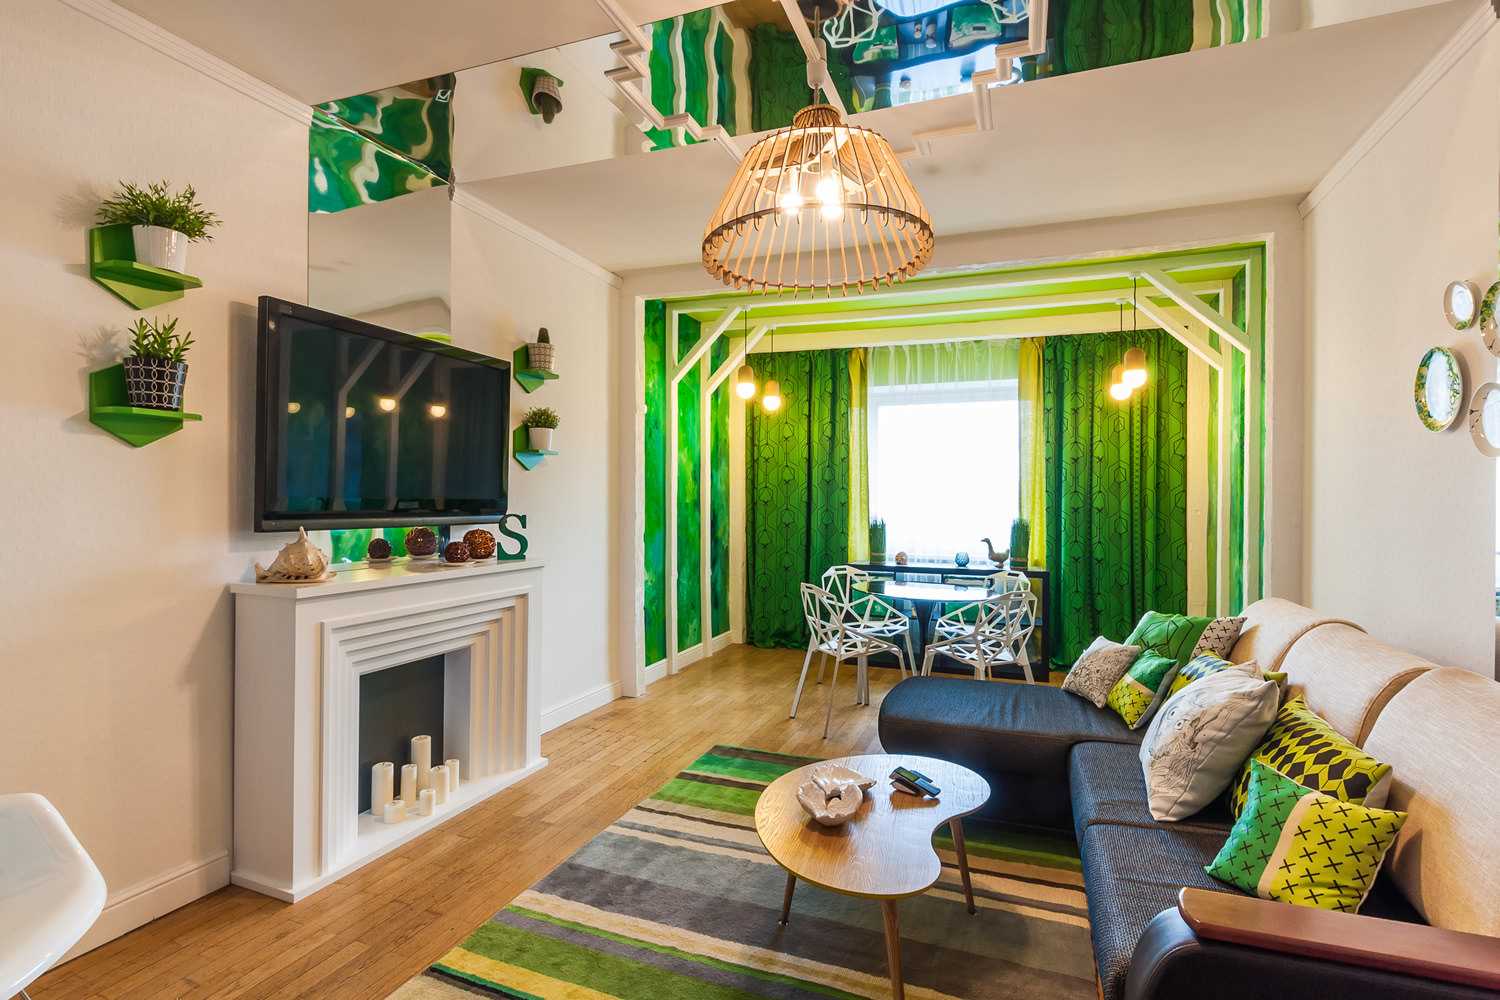 l'idea di applicare il verde in un bellissimo design della stanza